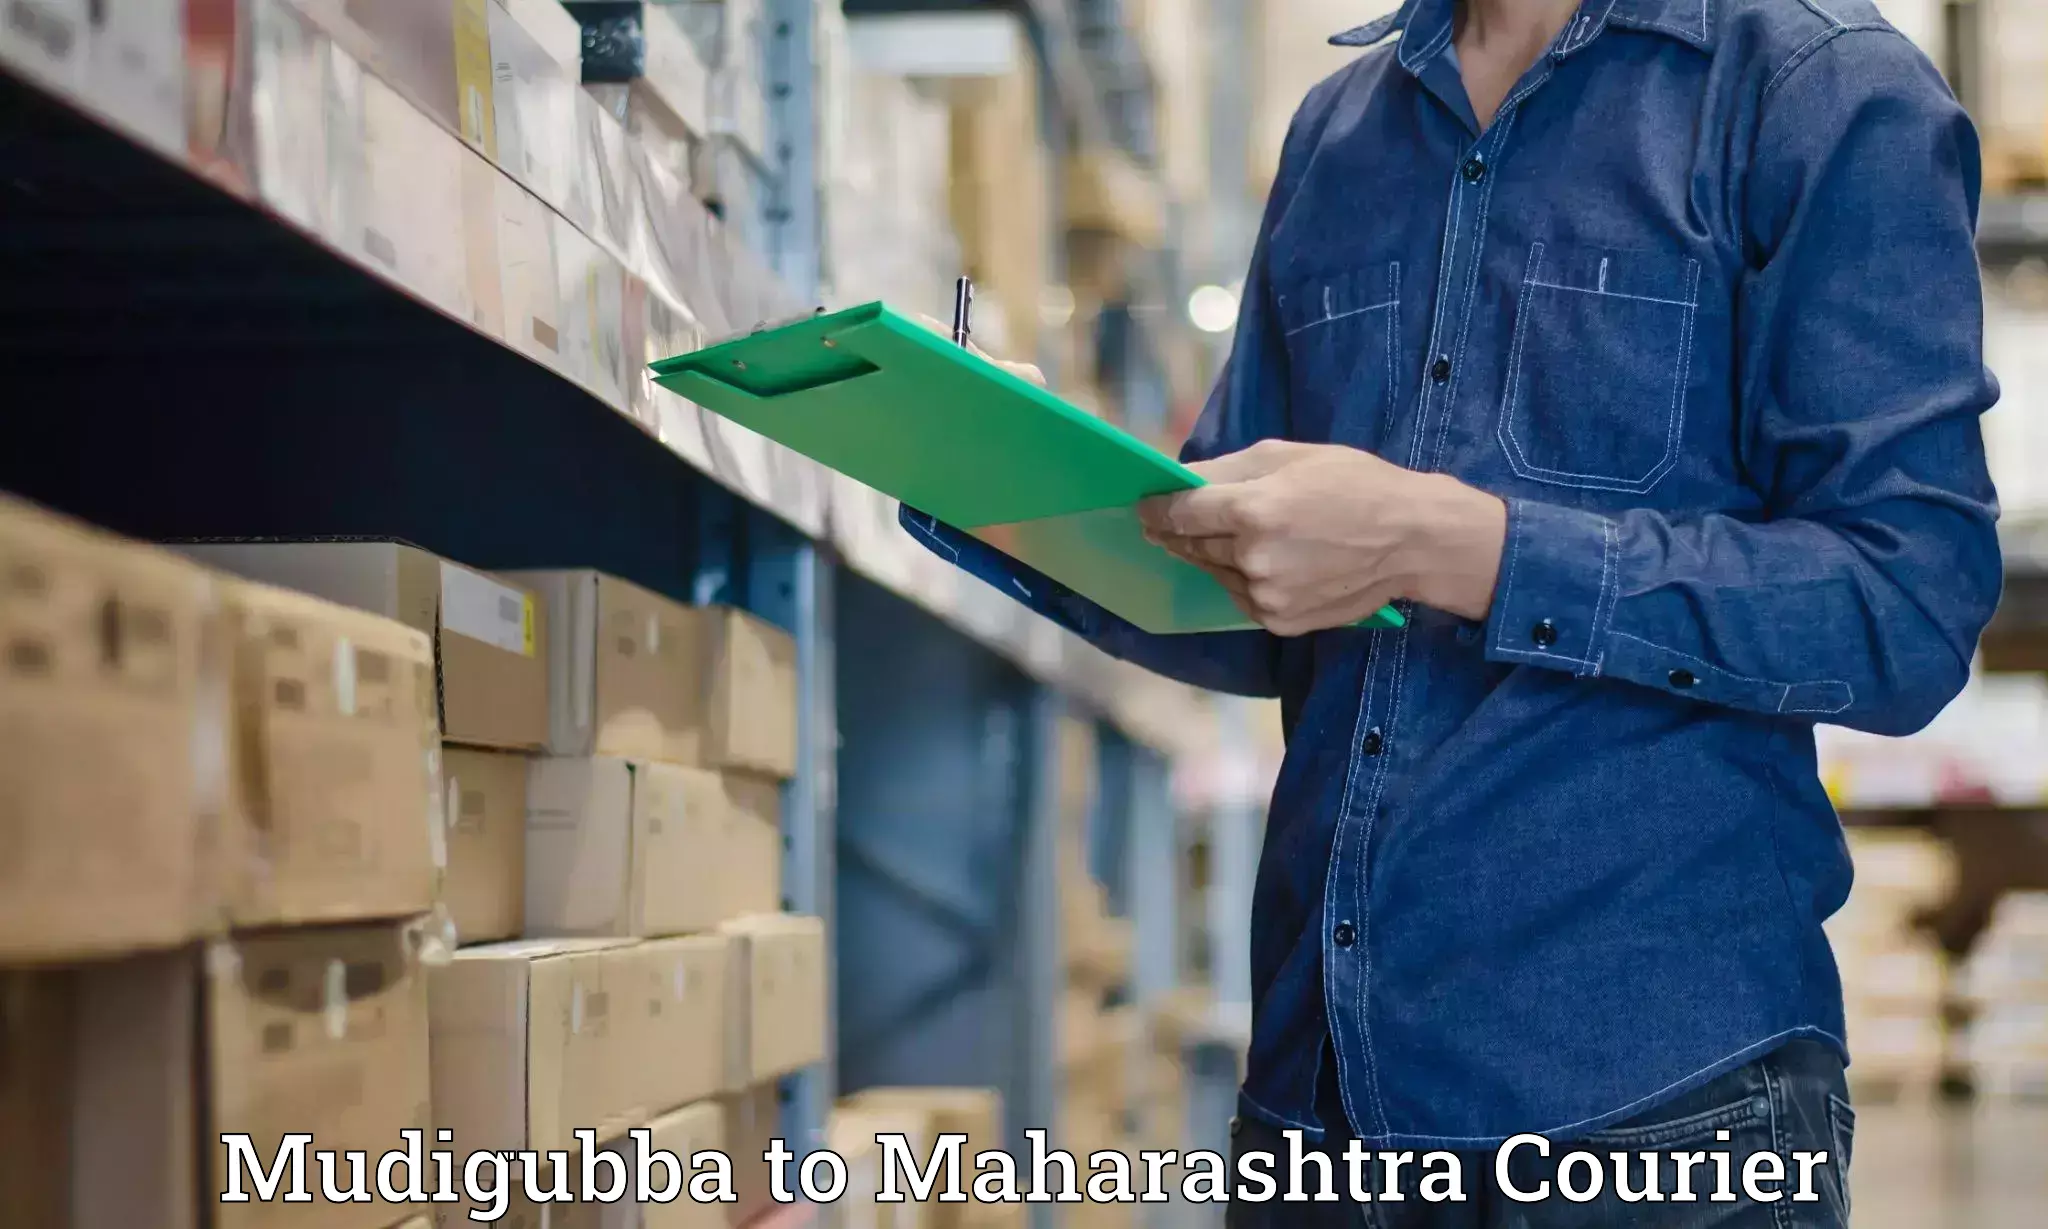 Premium courier services in Mudigubba to Sindhudurg